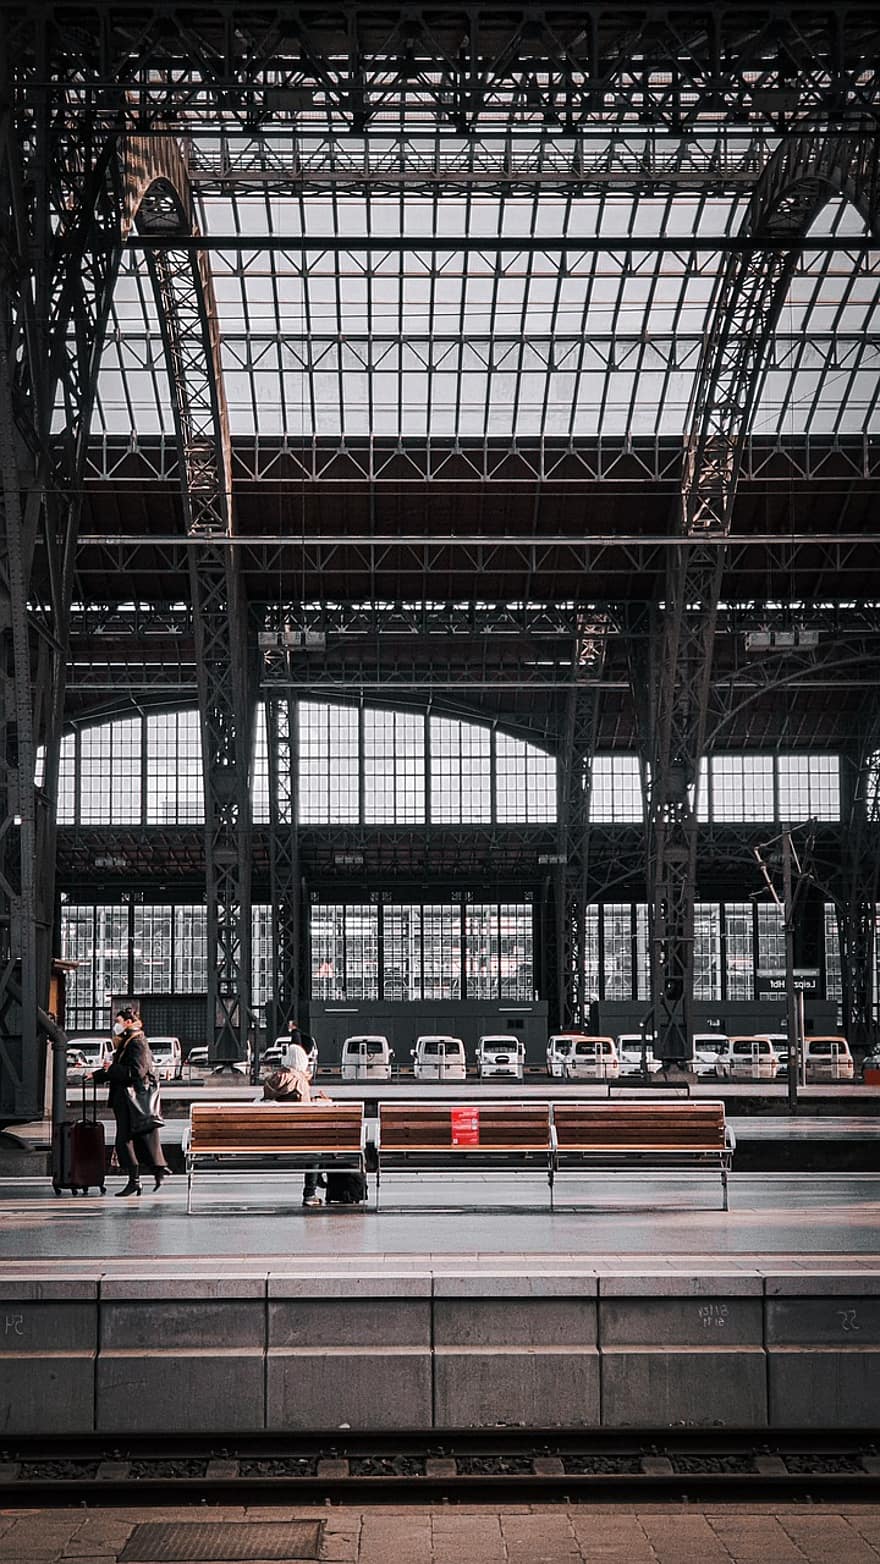 estación de tren, plataforma, viaje, Sajonia, arquitectura, adentro, transporte, estructura construida, vida en la ciudad, modo de transporte, moderno